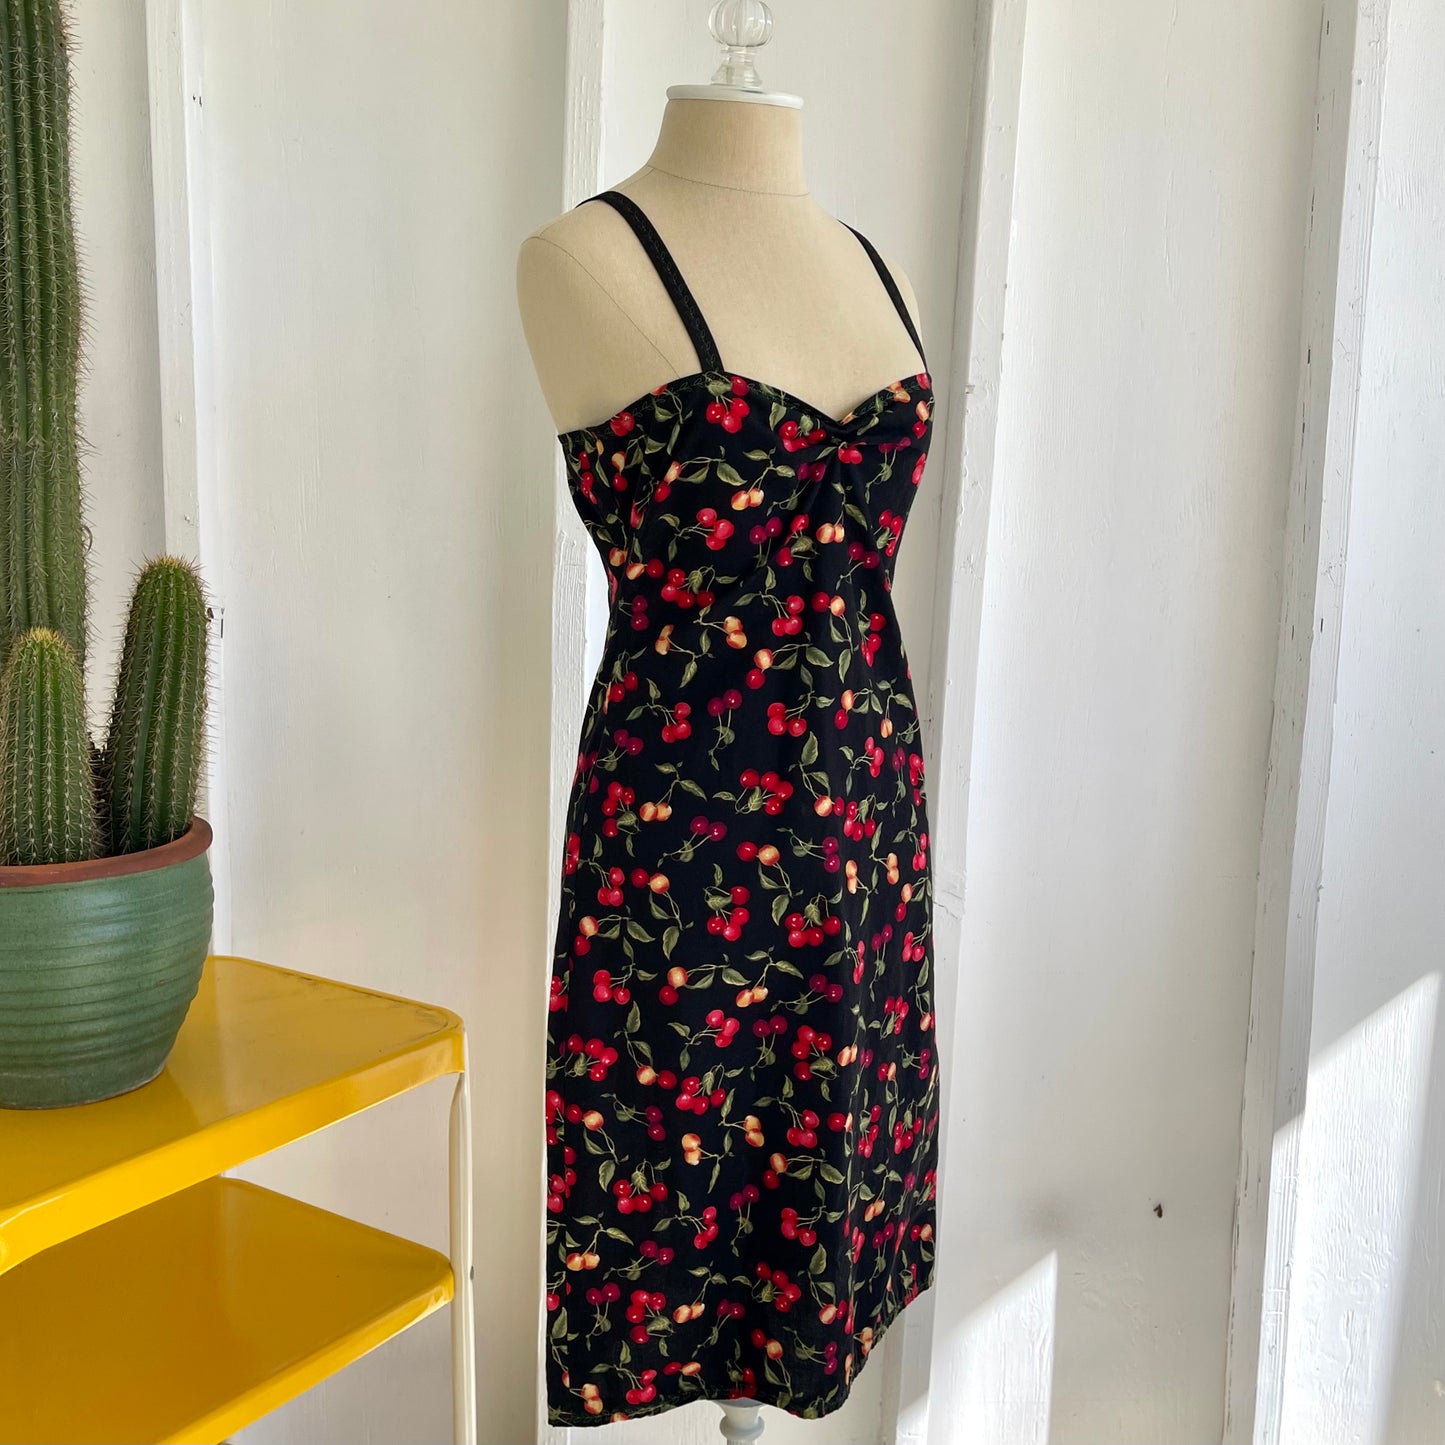 Homemade Women's Cherry Print Mini Dress